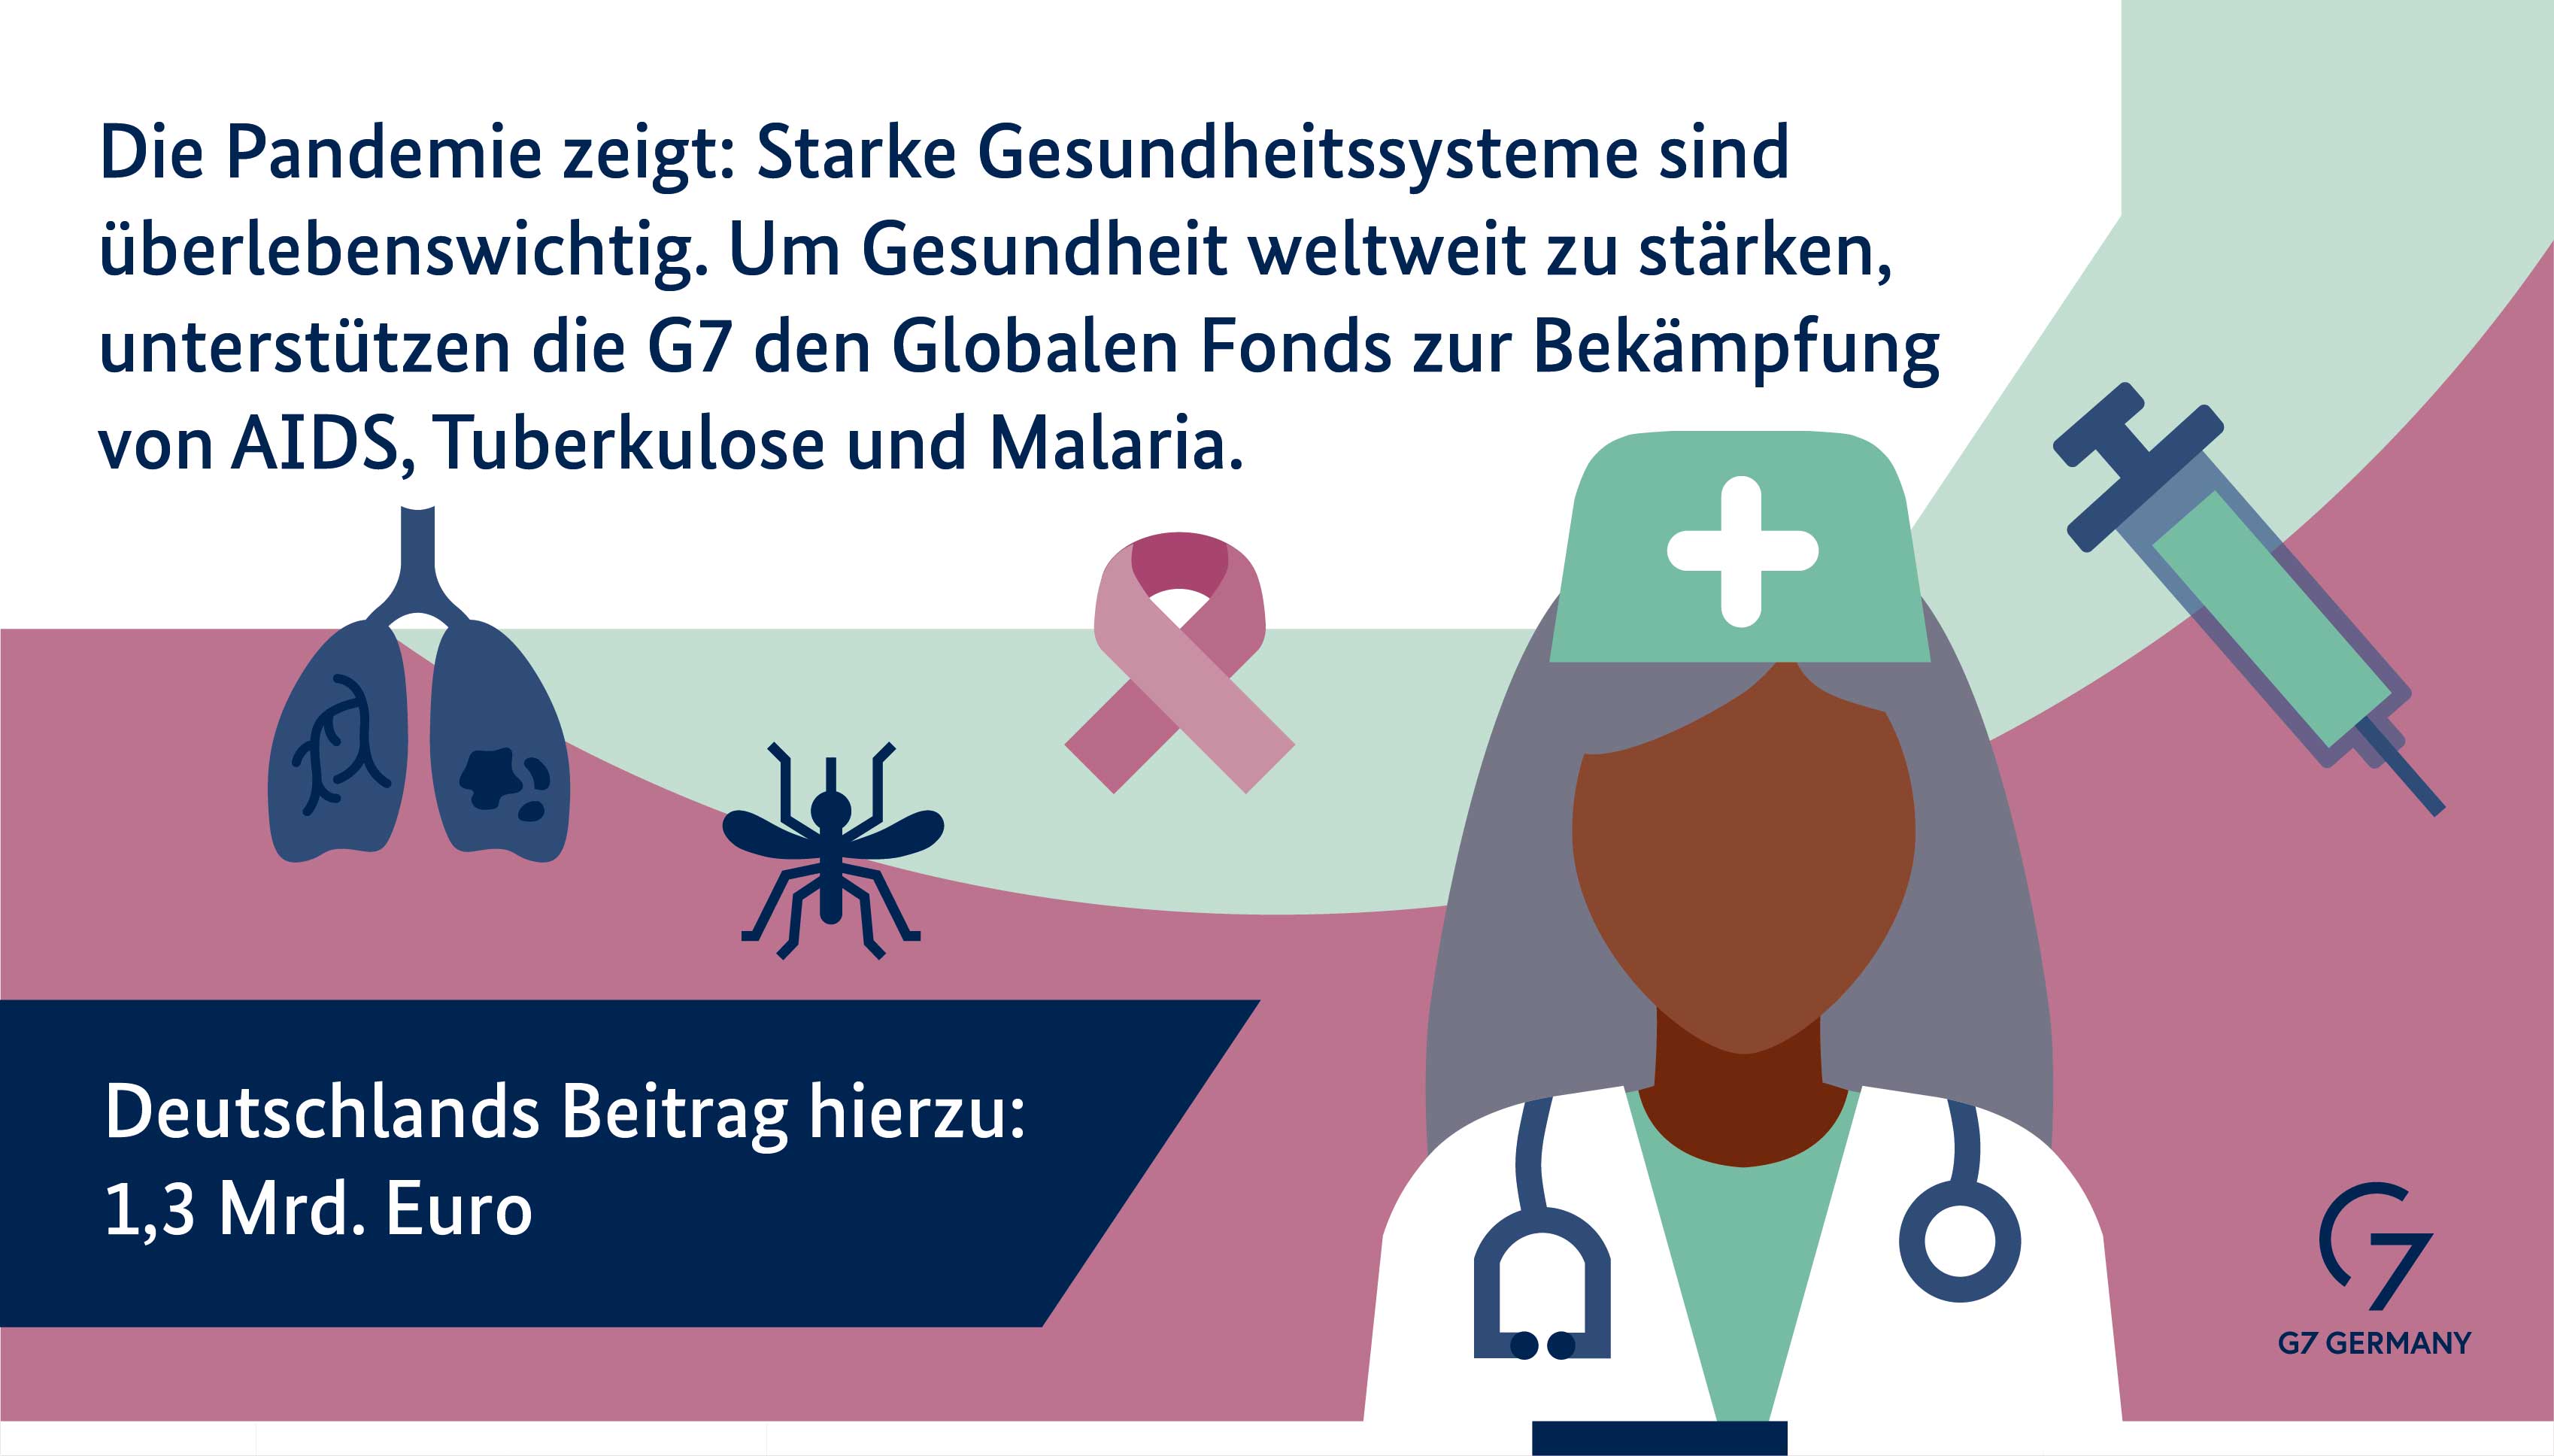 Die Pandemie zeigt: Starke Gesundheitssysteme sind überlebenswichtig. Um Gesundheit weltweit zu stärken, unterstützt die G7 den Globalen Fonds zur Bekämpfung von AIDS, Tuberkulose und Malaria. Deutschlands Beitrag hierzu: 1,3 Milliarden Euro